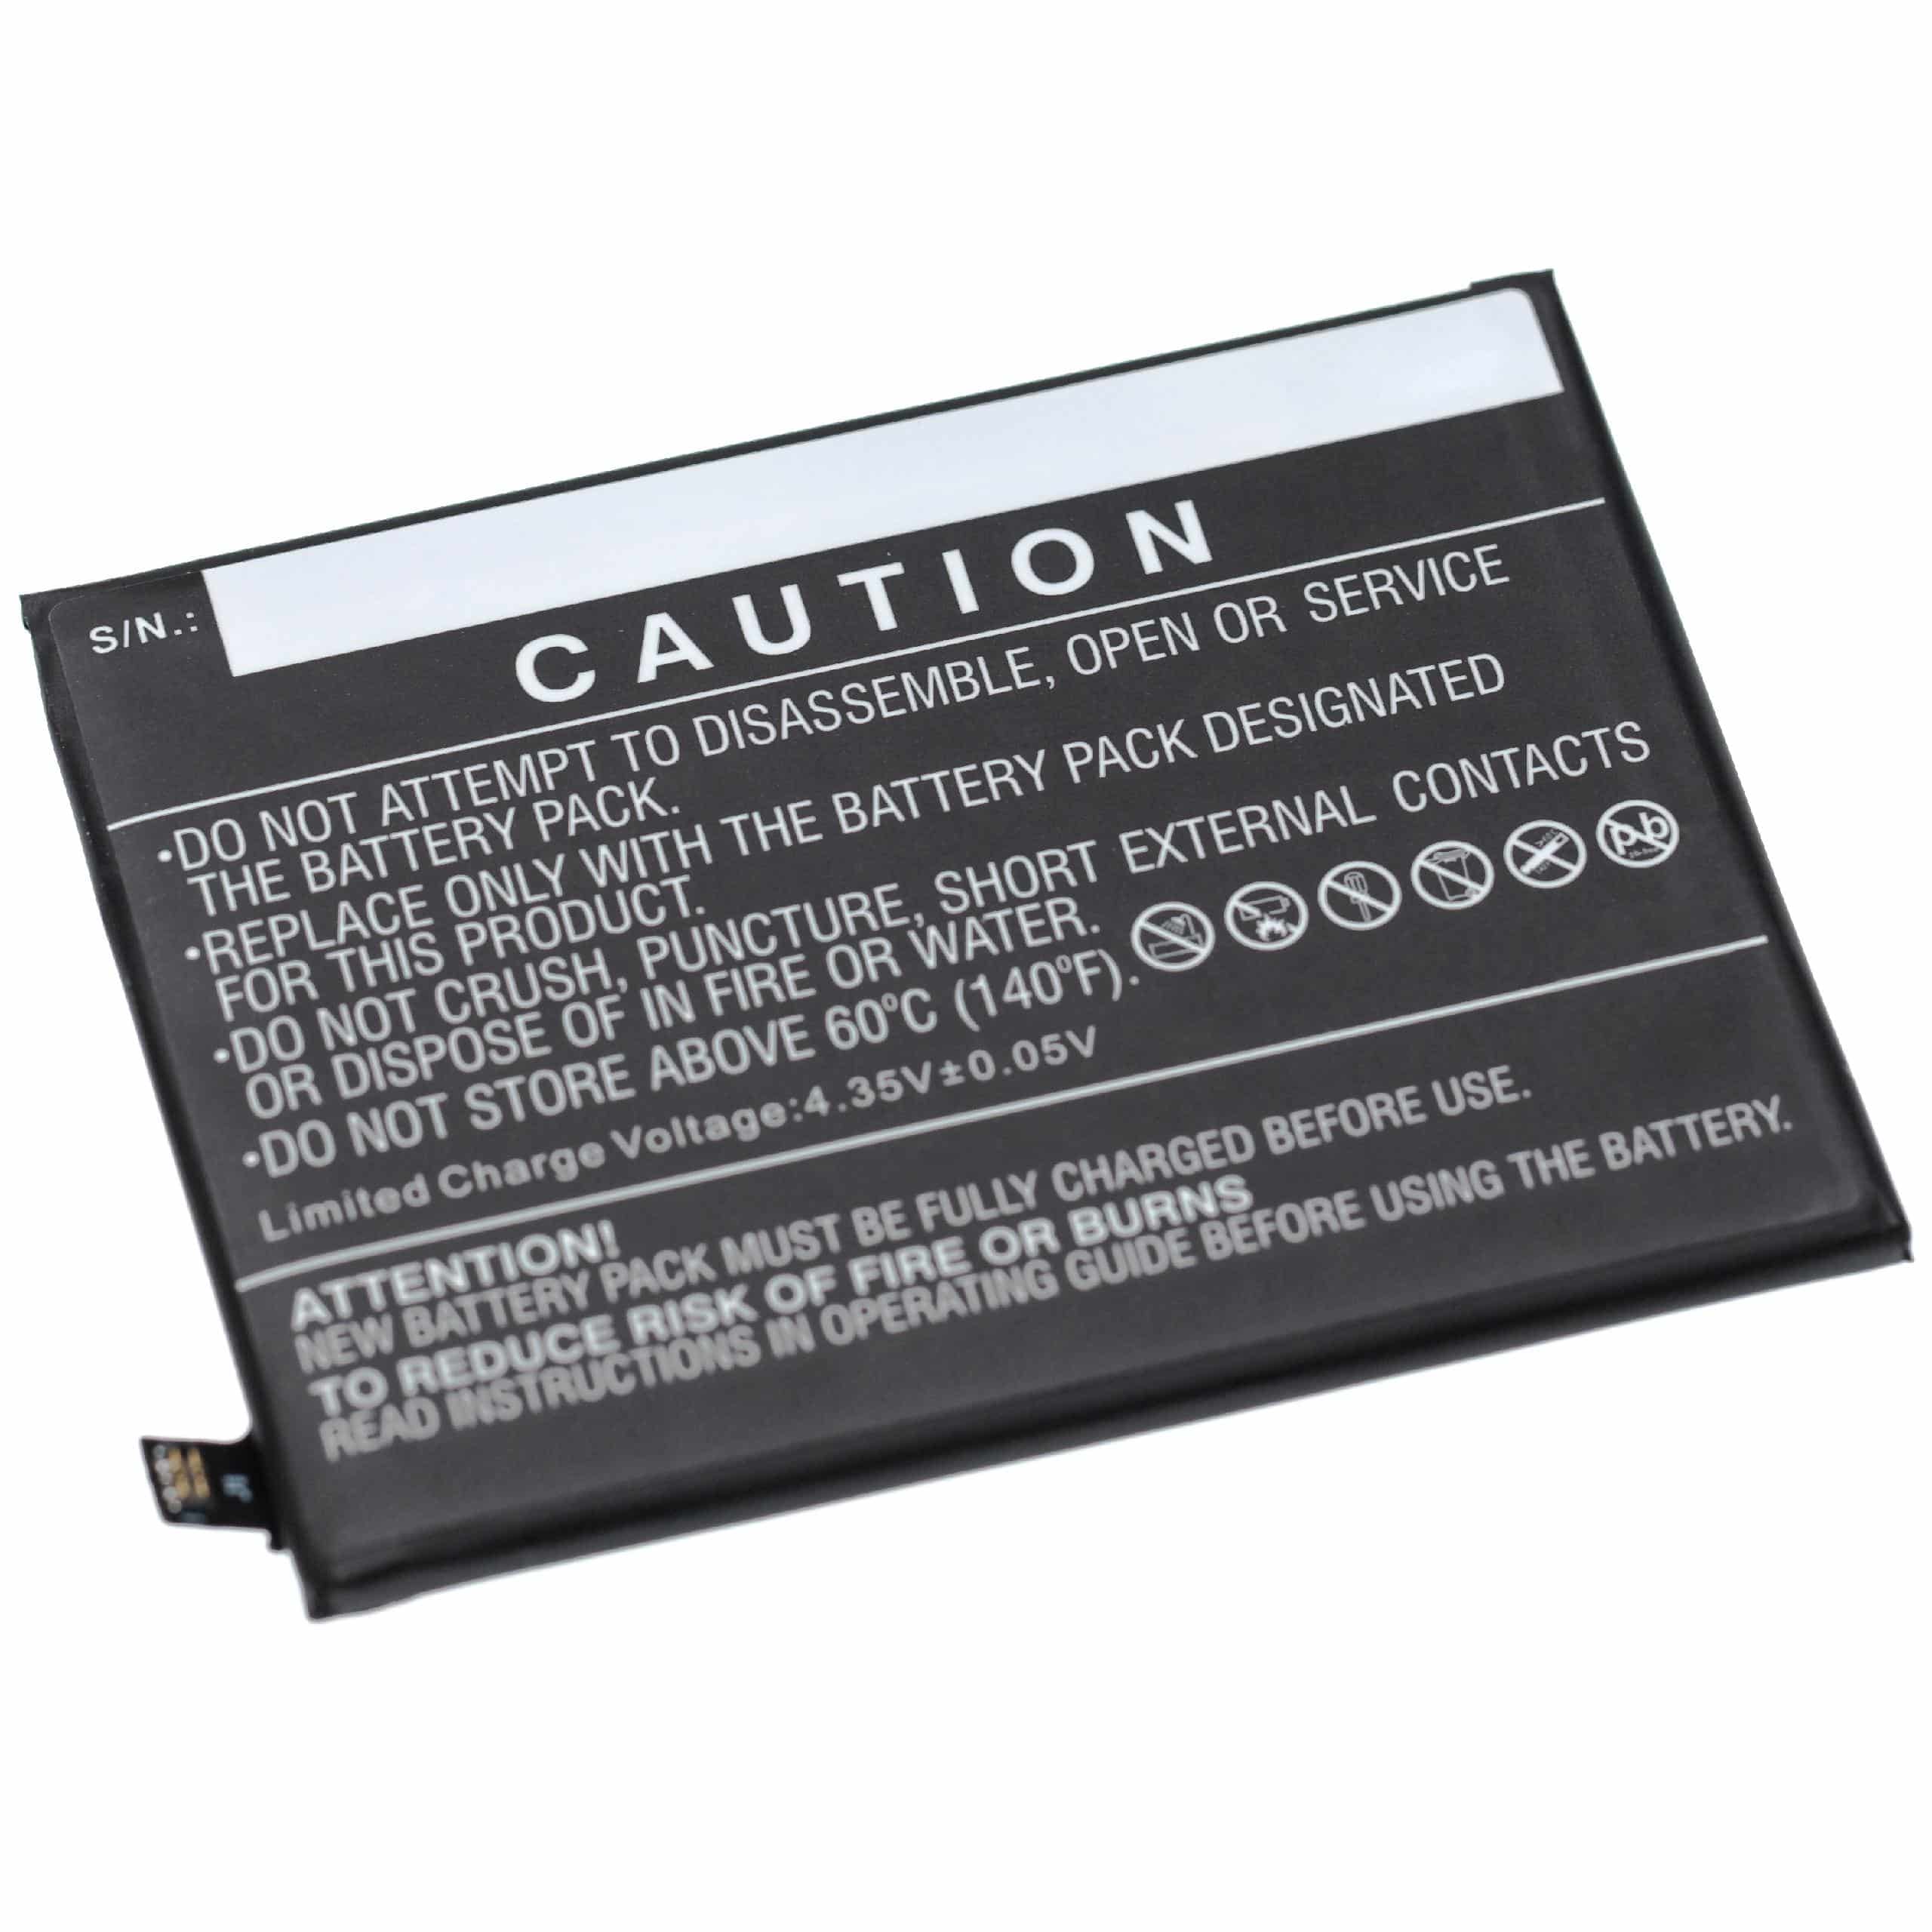 Batterie remplace Asus C11P1709 1ICP5/59/76 pour téléphone portable - 3000mAh, 3,8V, Li-polymère